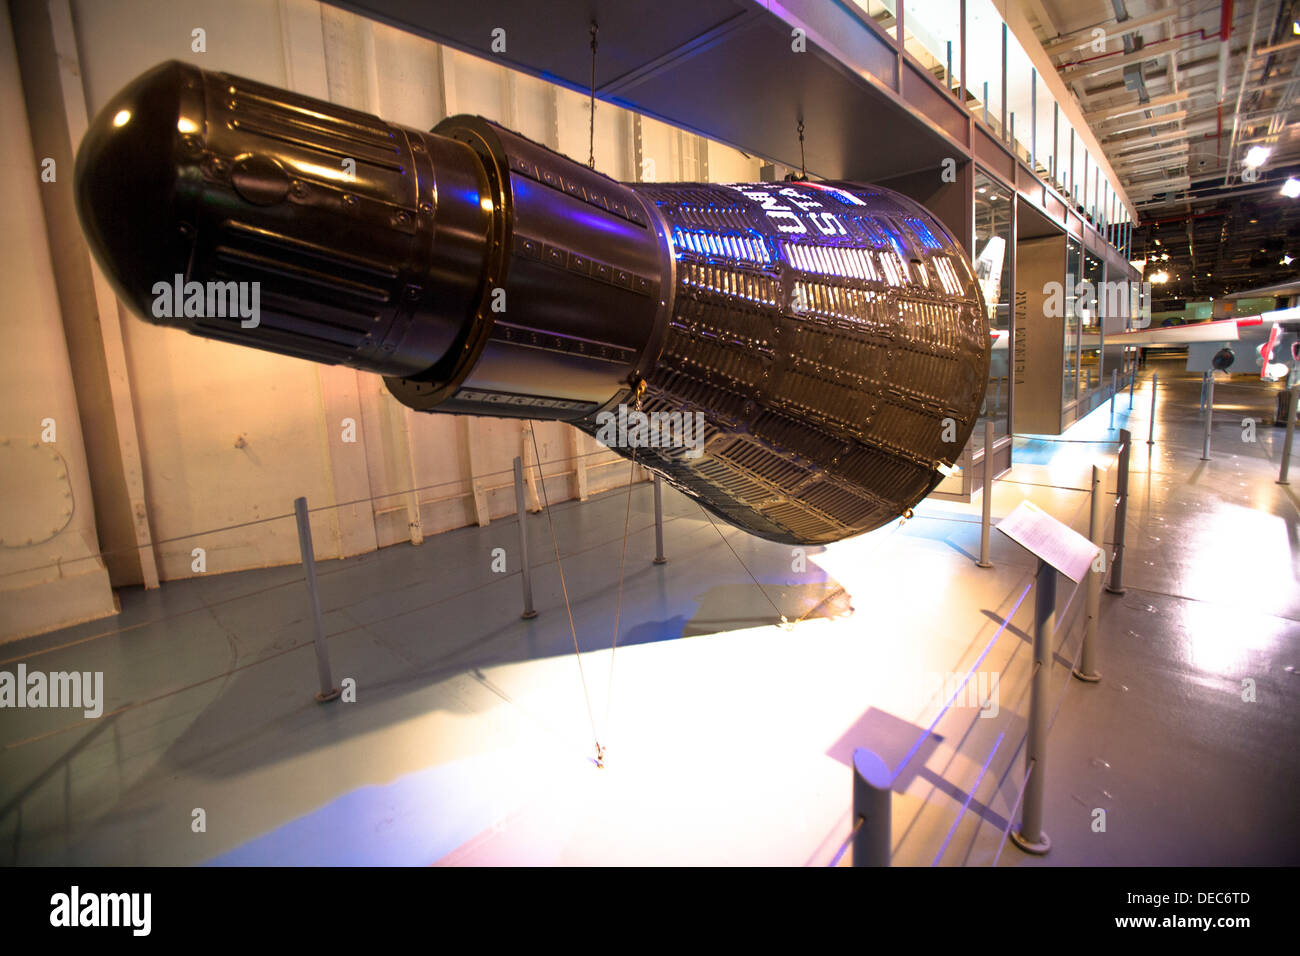 Aurora 7 Mercury capsule replica in the hangar of the Intrepid Sea, Air & Space Museum Stock Photo